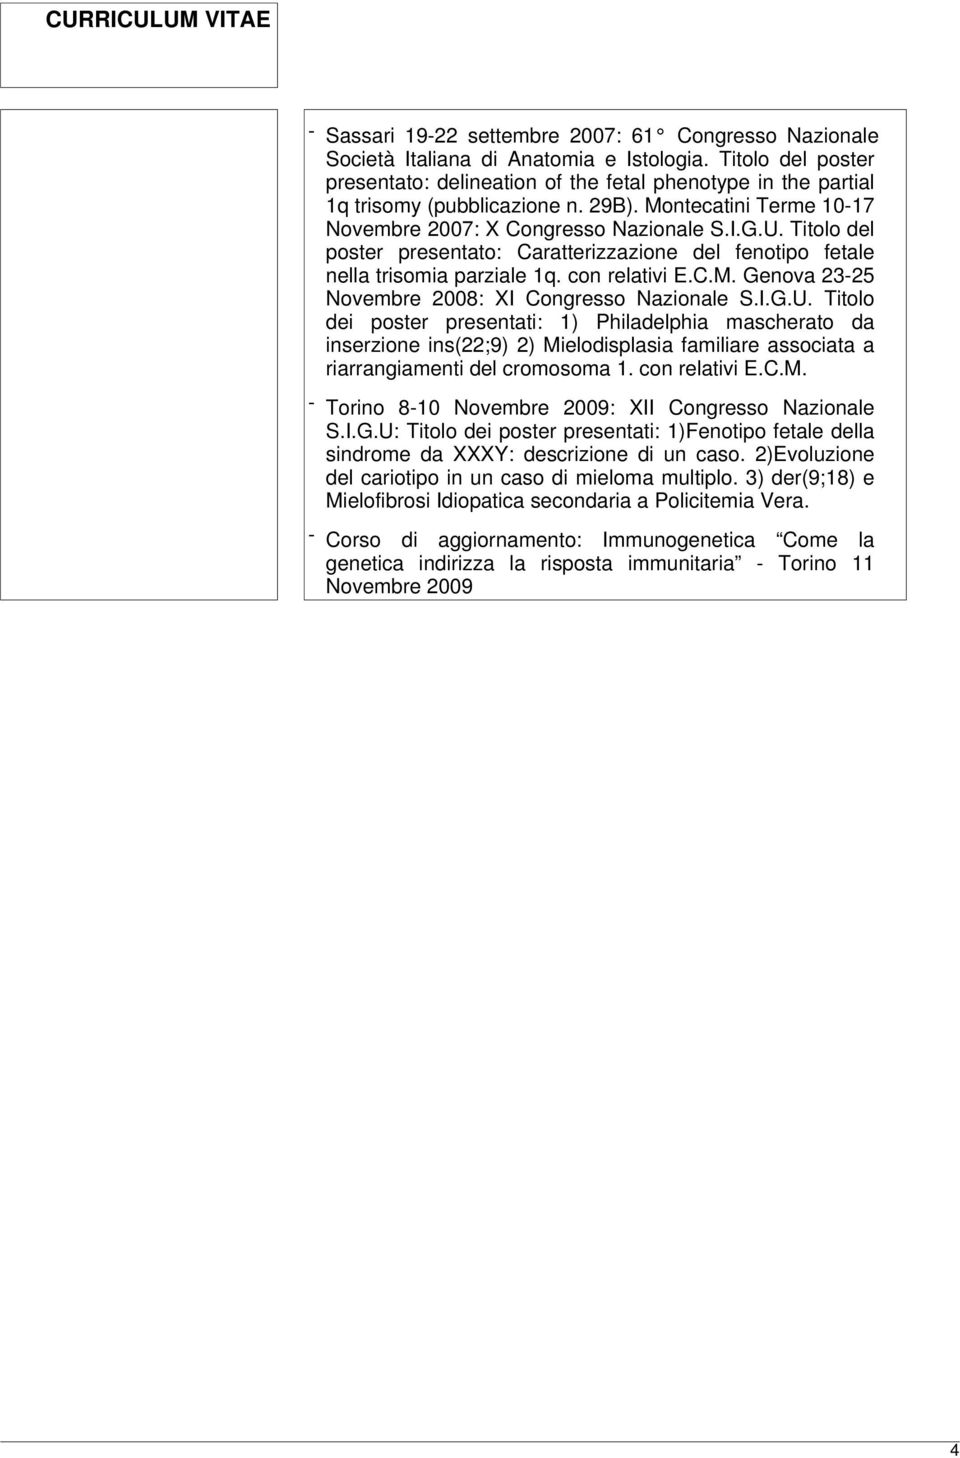 Titolo del poster presentato: Caratterizzazione del fenotipo fetale nella trisomia parziale 1q. con relativi E.C.M. Genova 23-25 Novembre 2008: XI Congresso Nazionale S.I.G.U.